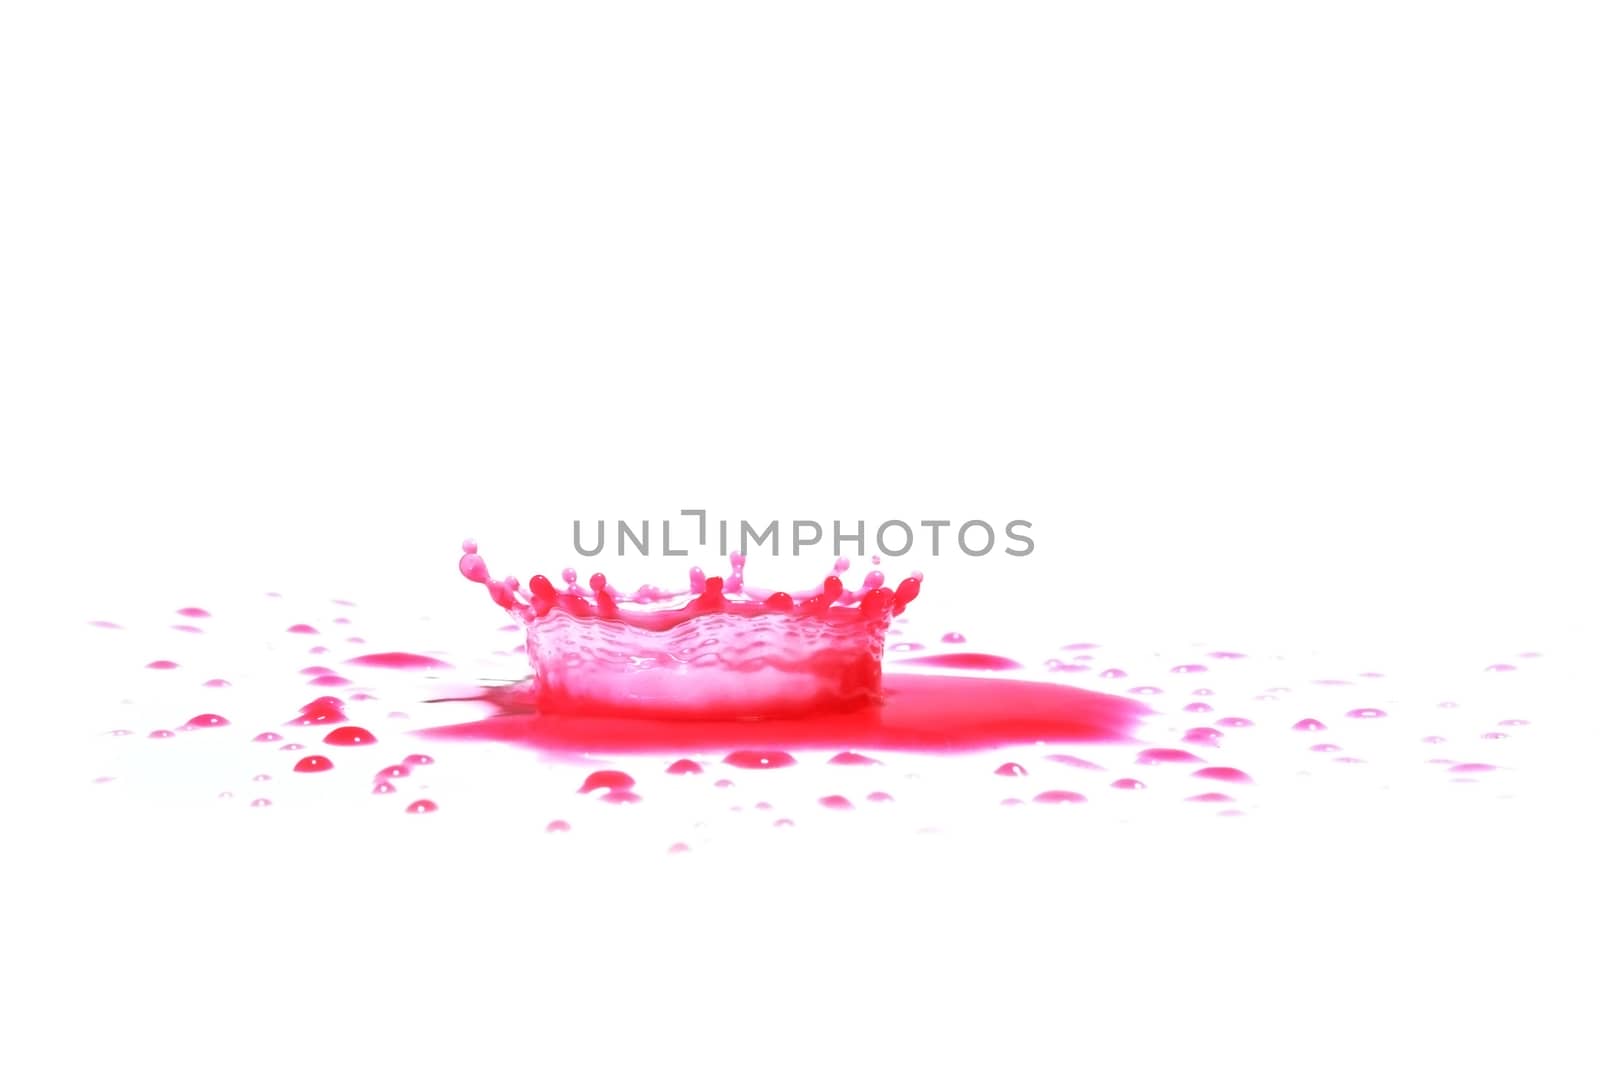 Red paint splashing by wyoosumran